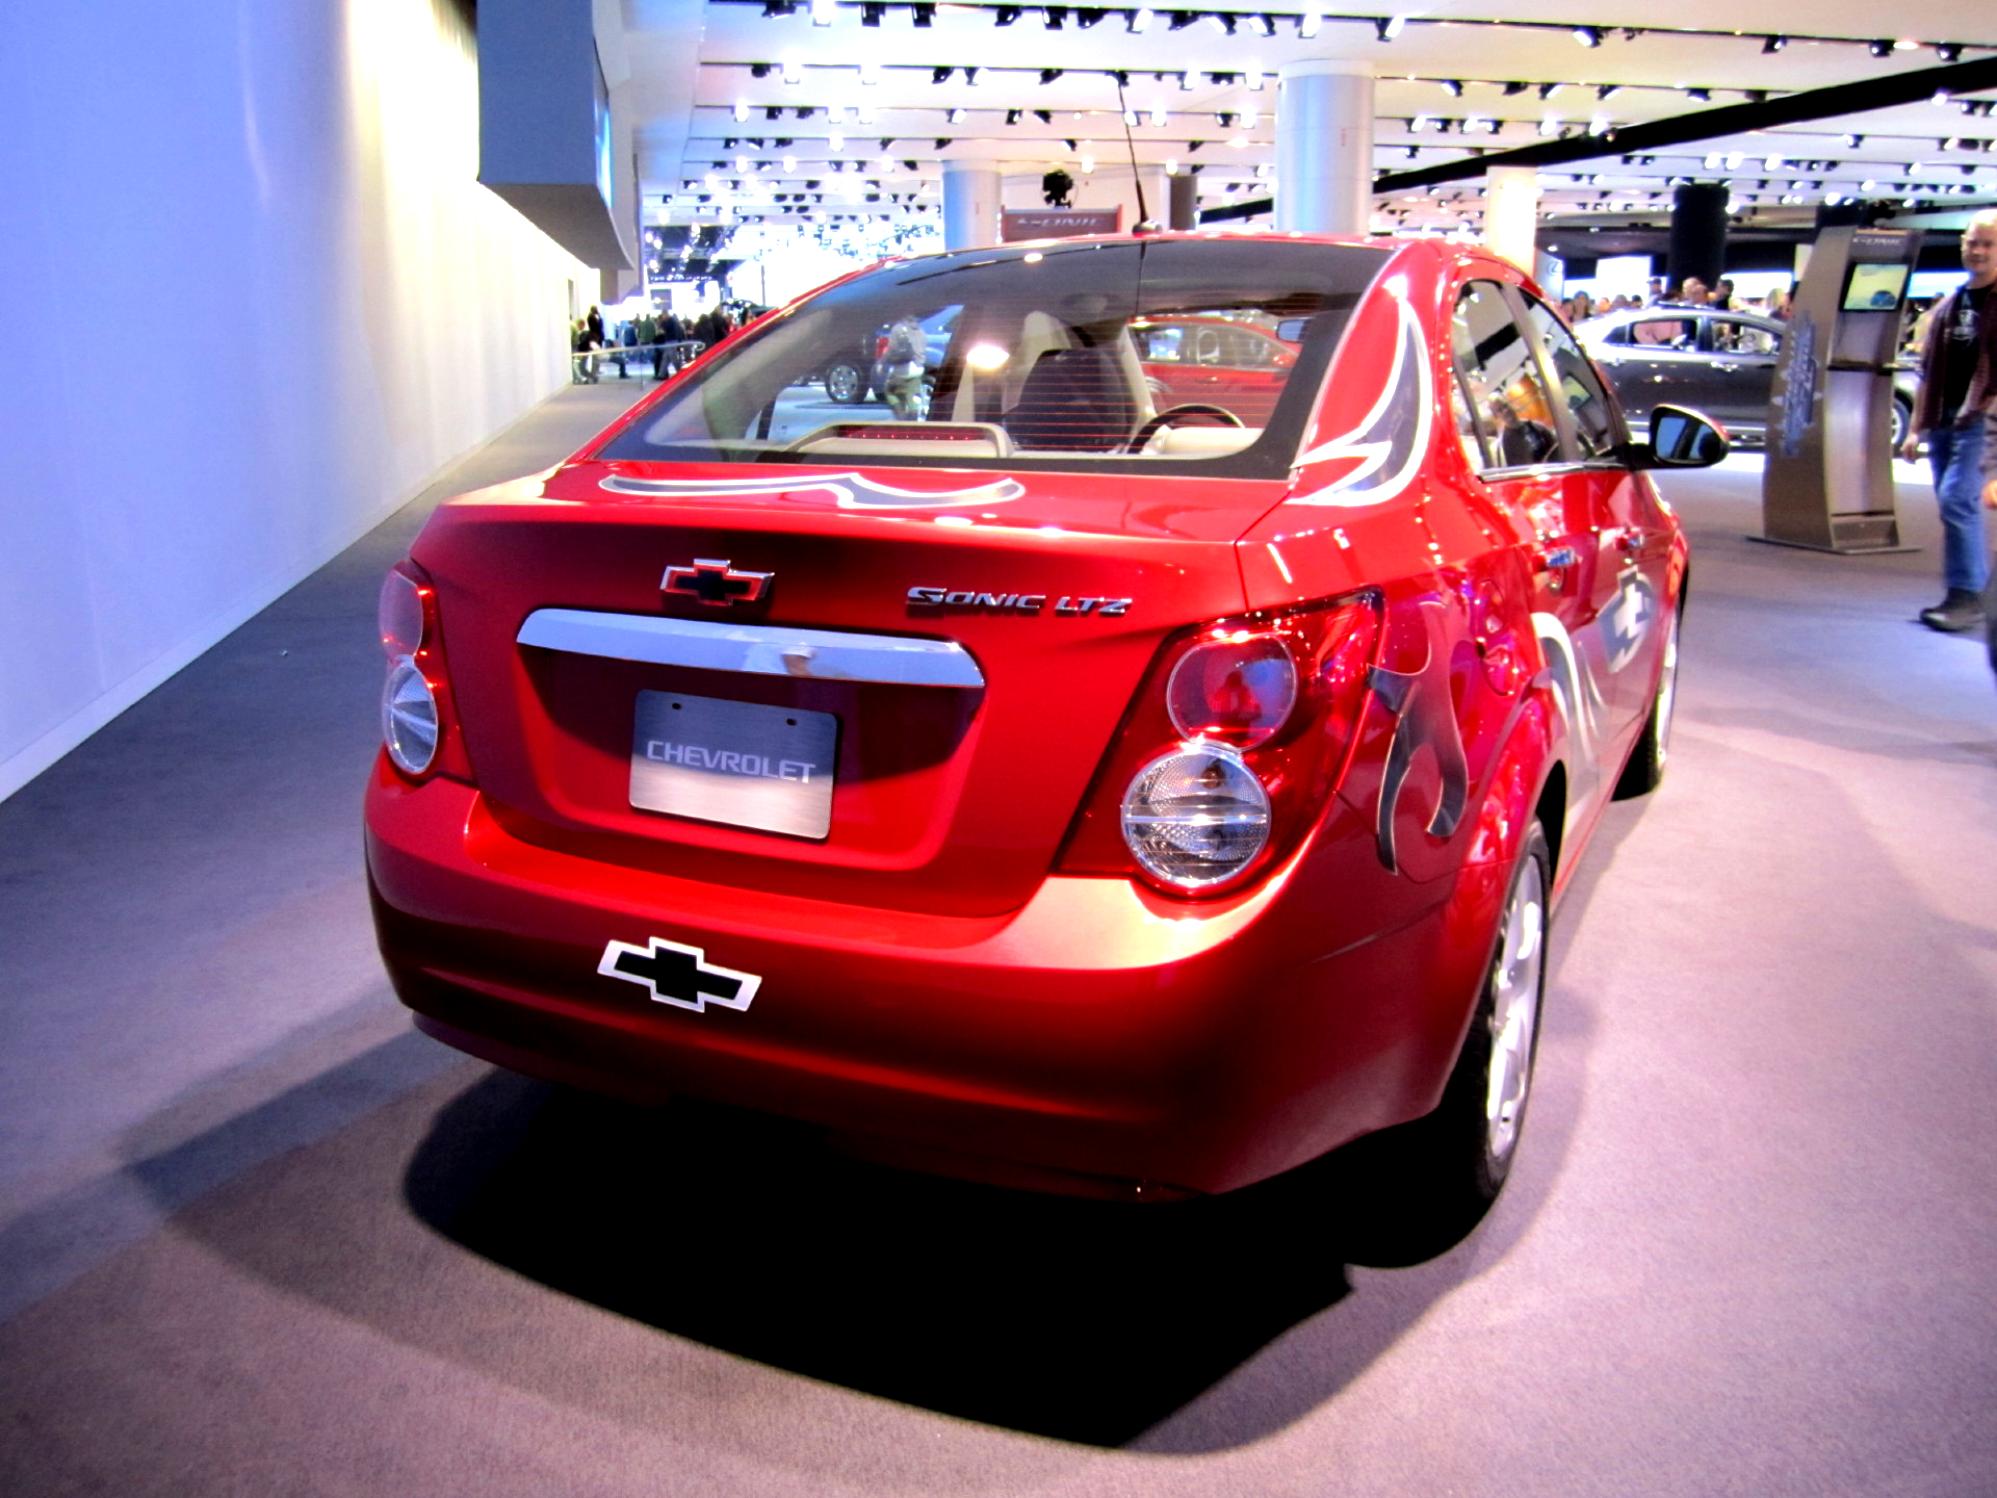 Chevrolet Sonic Sedan 2011 #11